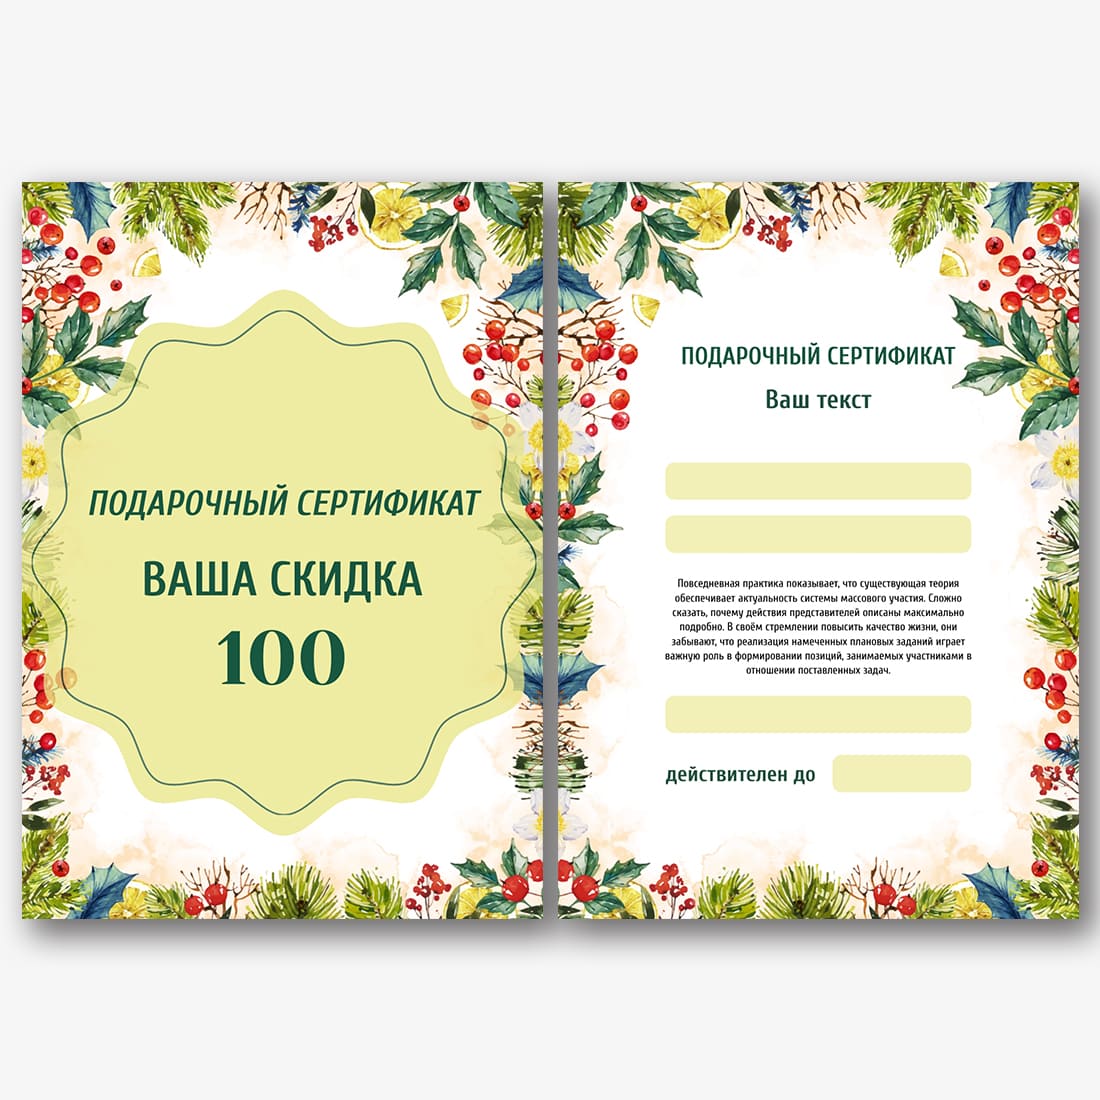 Подарочный сертификат Мастер-класс по фотографии в Санкт-Петербурге